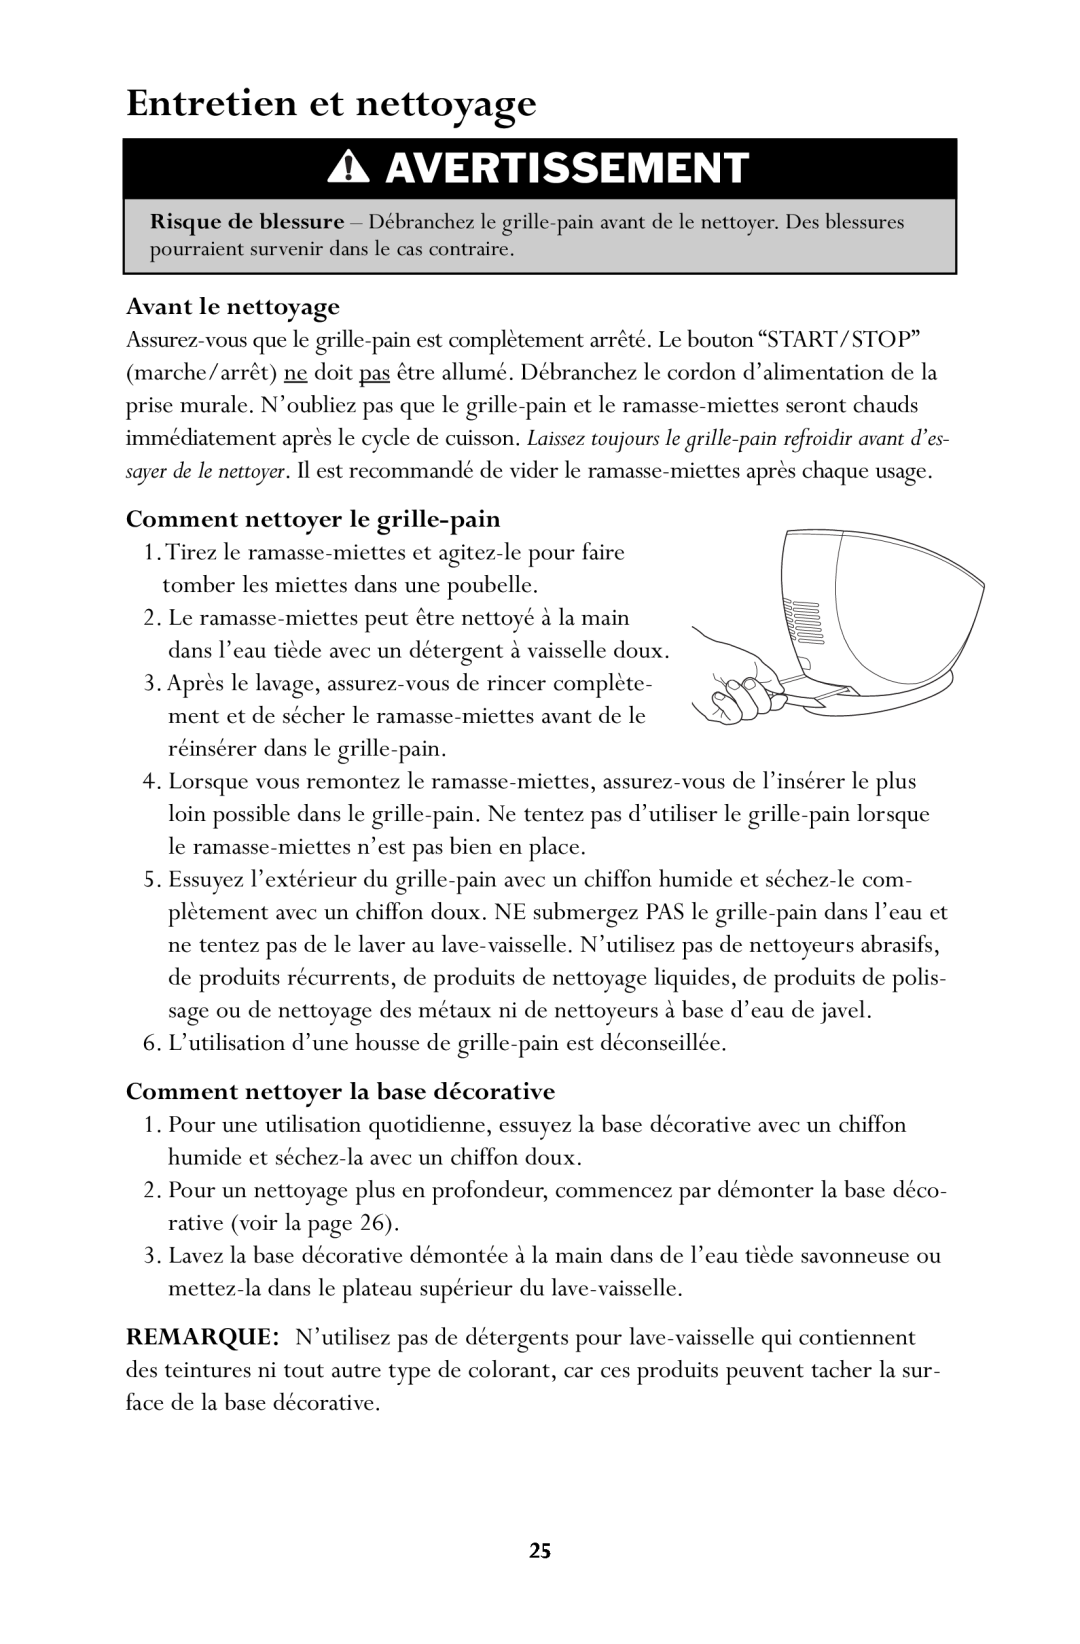 Jenn-Air JTO500 manual Entretien et nettoyage, Avertissement 